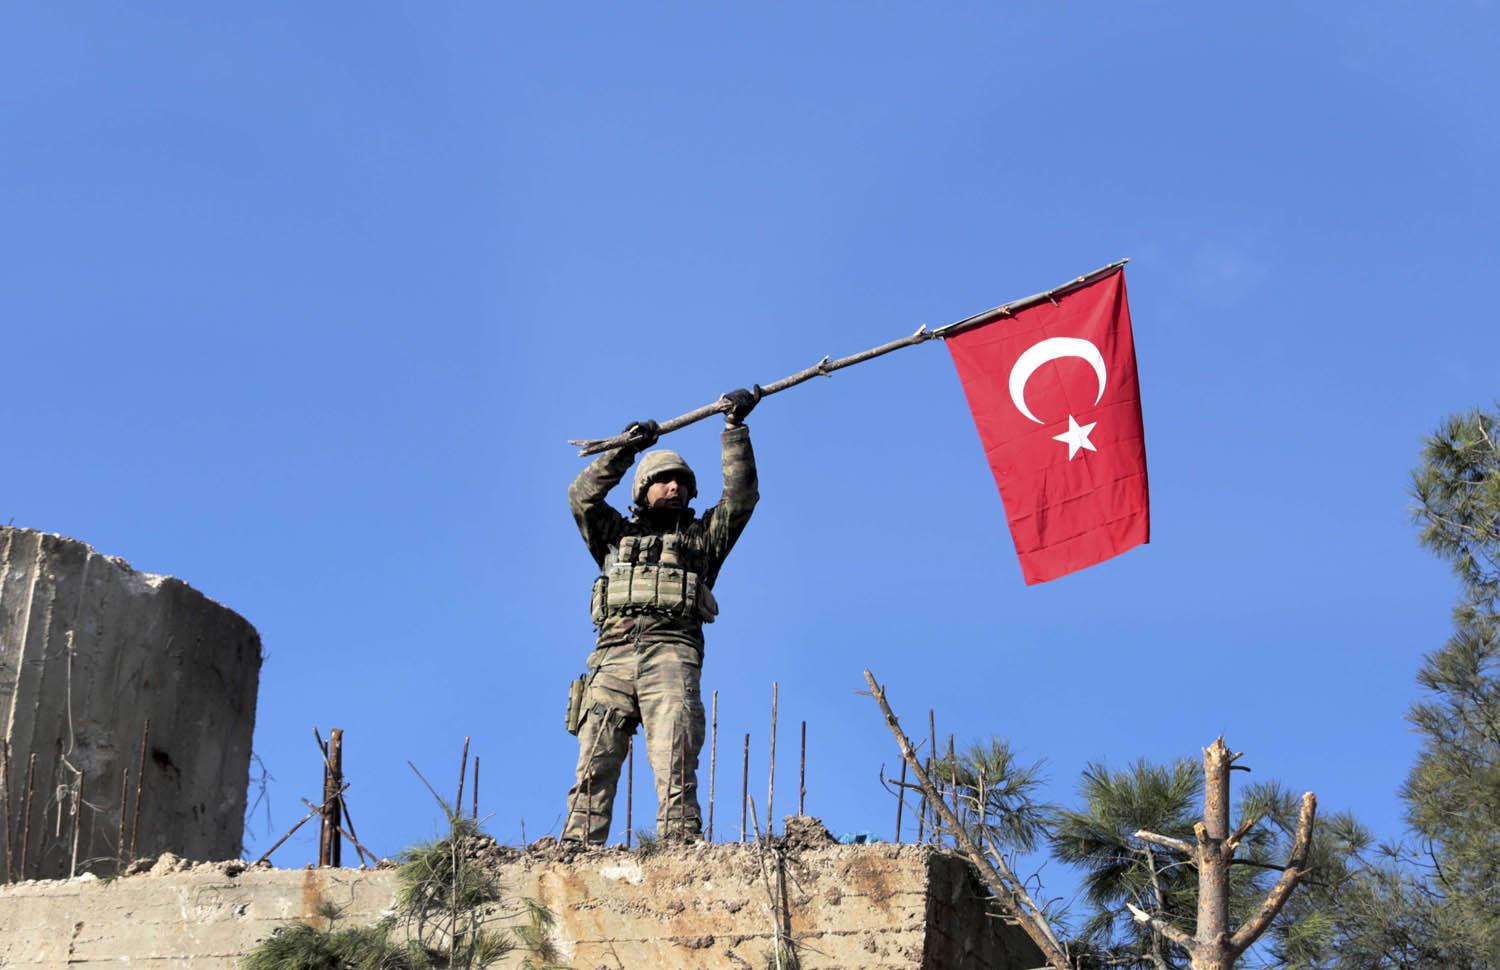 جندي تركي يرفع علم بلاده فوق سطح مبنى في بصيرة بالقرب من عفرين